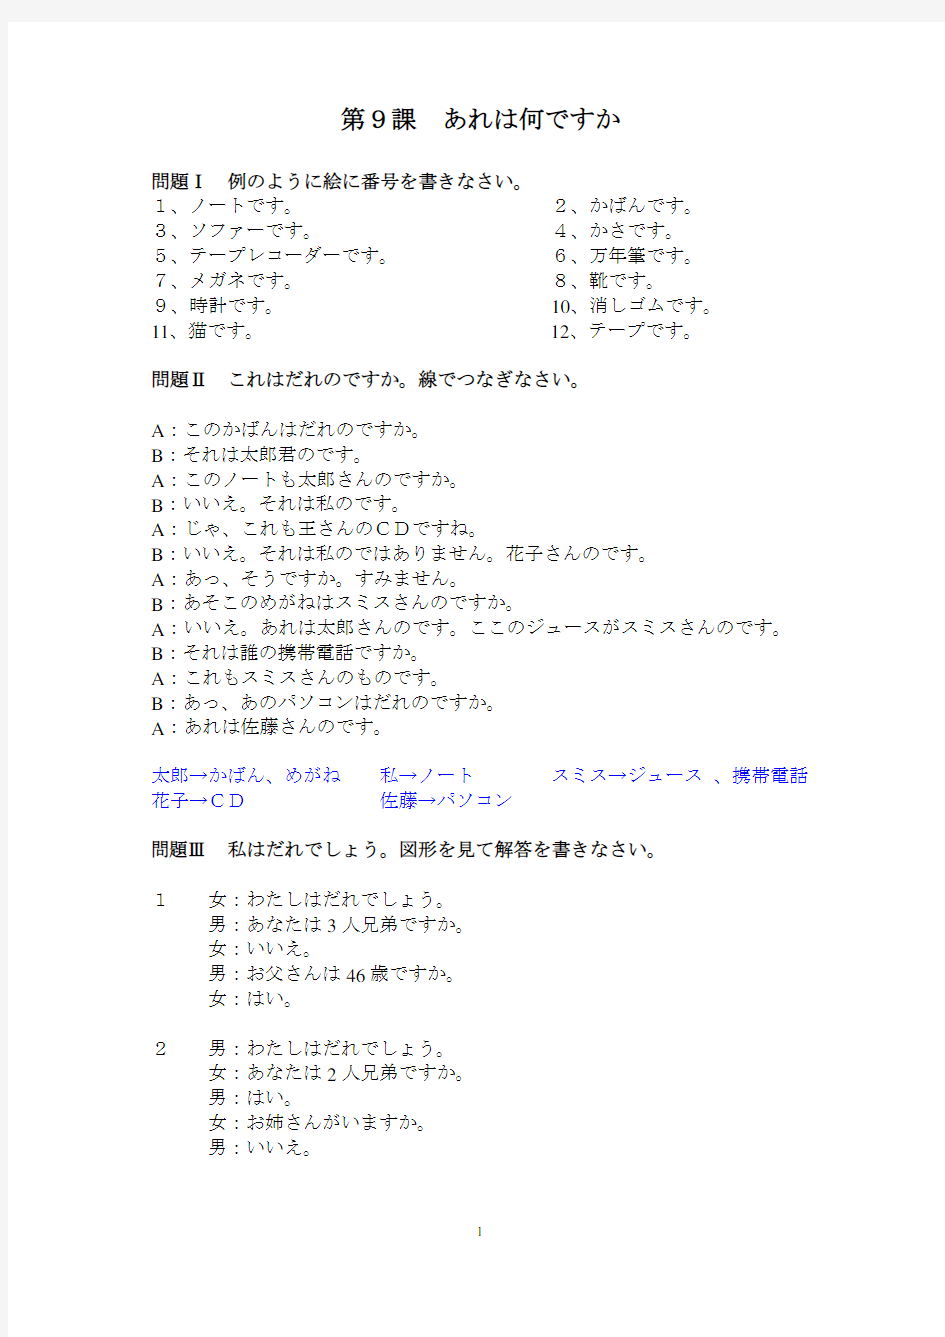 日本语听力 第二版 入门篇 9-12课听力原文及答案